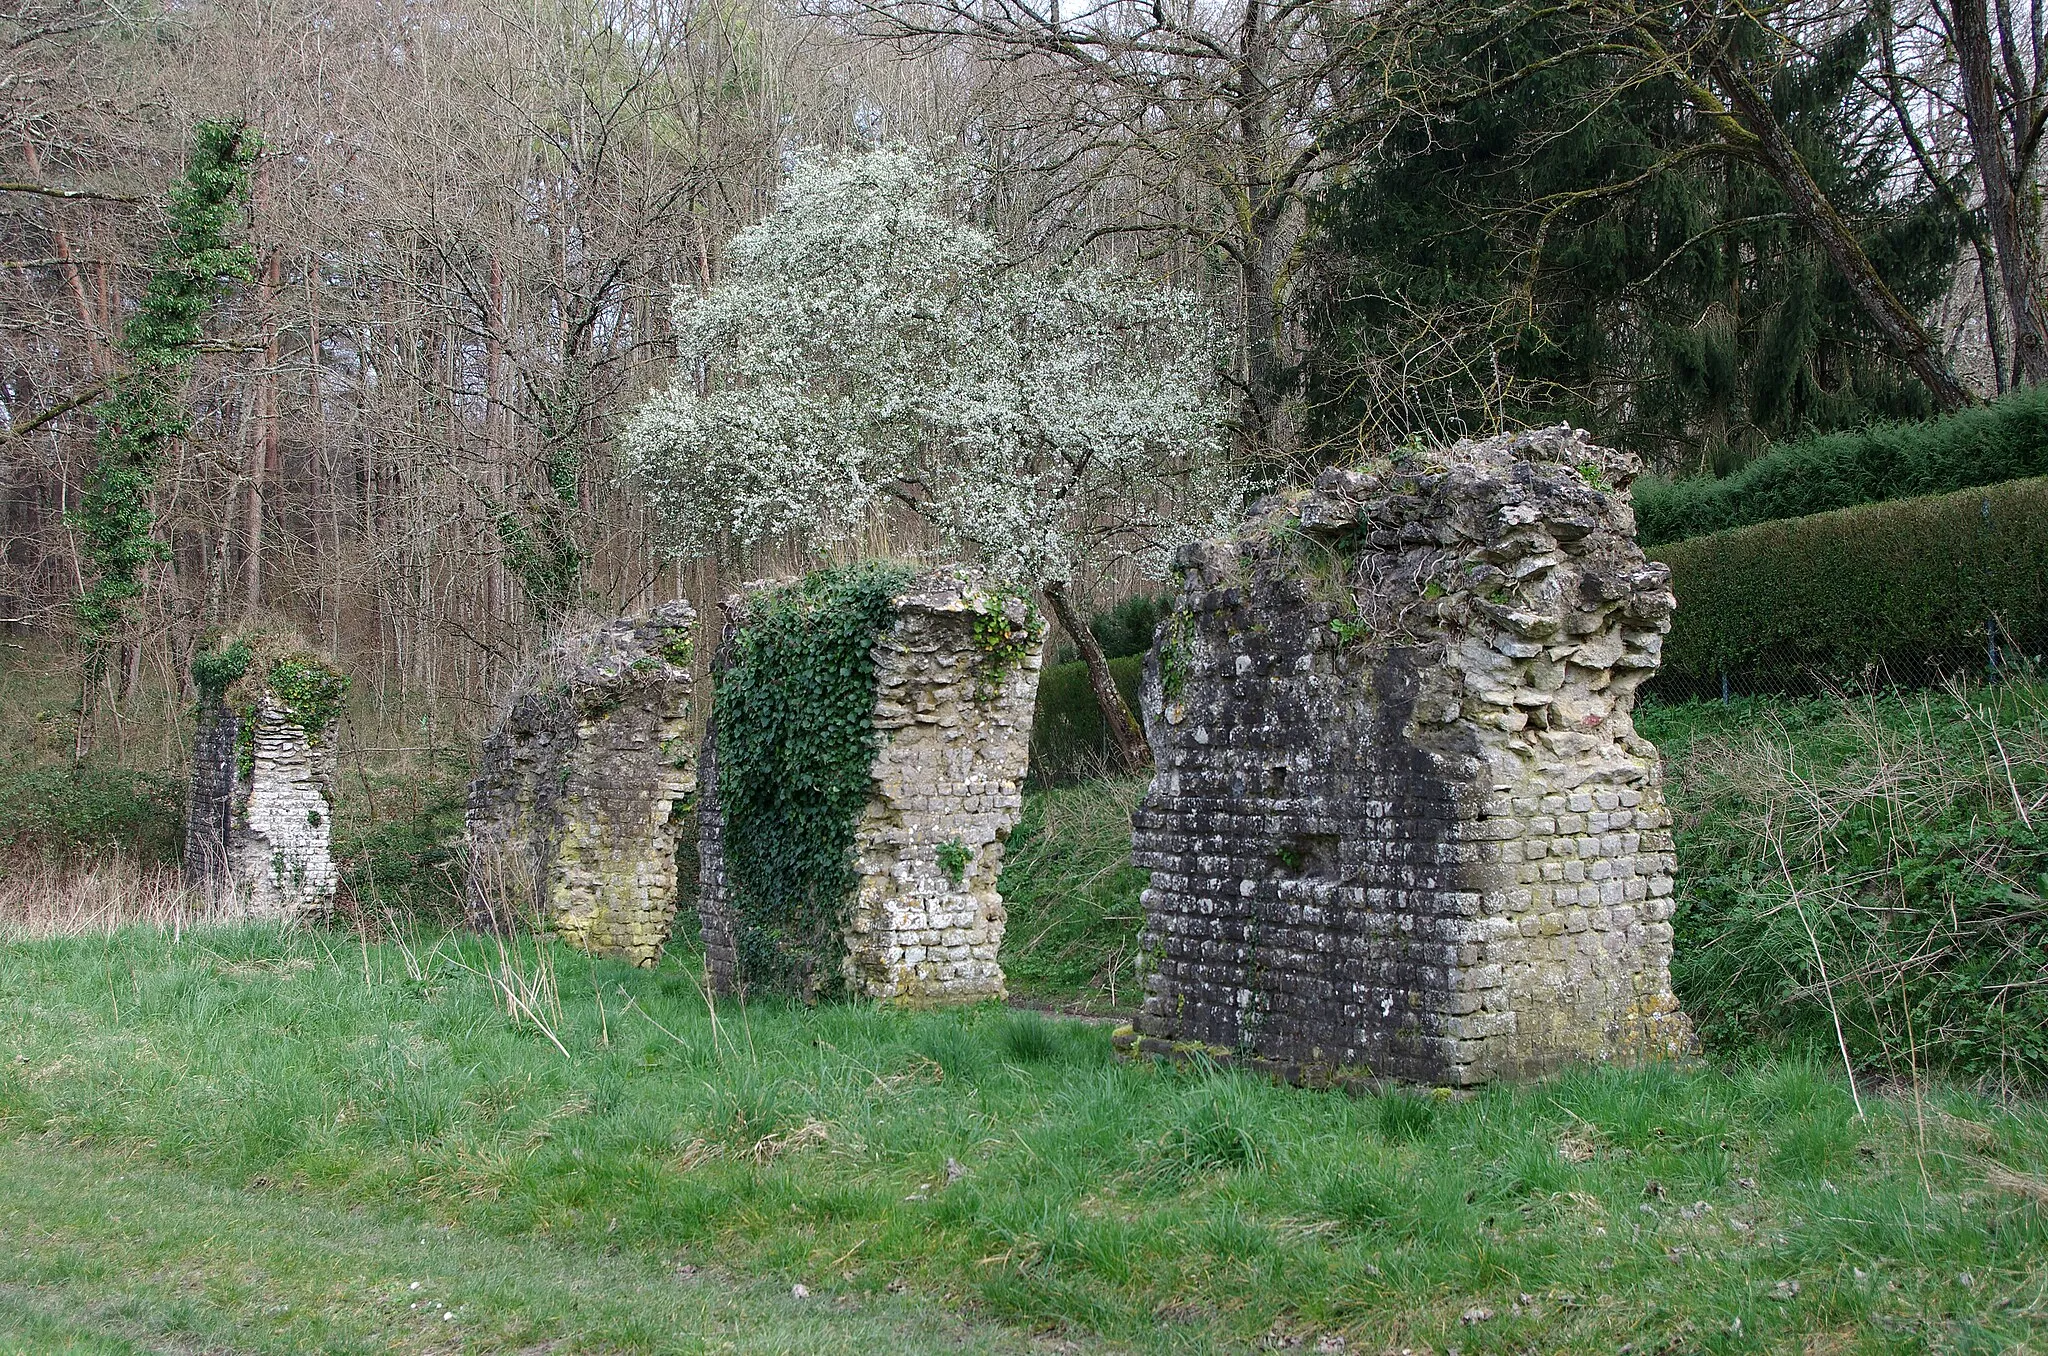 Photo showing: Ferrières-sur-Beaulieu (Indre-et-Loire)
Il s'agit des vestiges d'un aqueduc gallo-romain qui alimentait en eau une villa située non loin de Loches. 
Ils sont situés non loin du lieu dit « les petites maisons ». 
L'aqueduc de Contray sur la rive droite de l'Indre a conservé 4 piles. 
Cette partie aérienne de l'aqueduc permettait de franchir un vallon. 
L'eau était certainement captée à la fontaine d'Orfonds, située dans la forêt de Loches, et alimentait une villa proche de Contray.

It is the remains of a Gallo-Roman aqueduct that supplied water to a villa near Loches.
They are located not far from the place called « les « petites maisons.
The aqueduct Contray on the right bank of the Indre retained 4 pilasters aqueduct.
The aerial part of the aqueduct allowed to cross a valley.

The water was certainly captured the fountain Orfonds, located in the forest of Loches, and suppling with water a villa near Contray.